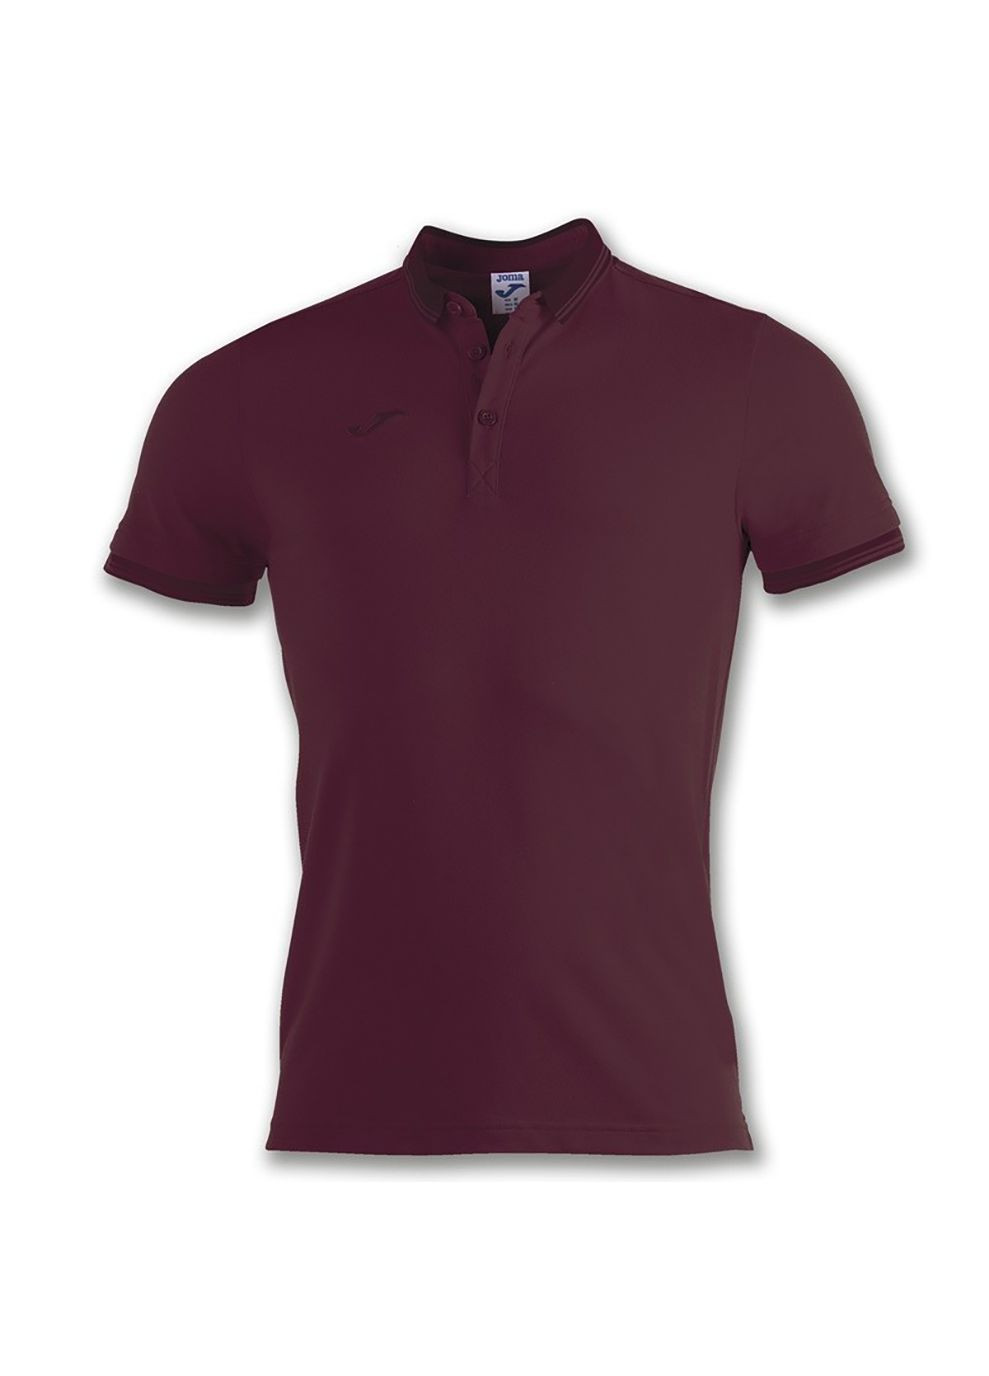 Бордовая футболка-поло polo shirt bali ii burgundy s/s бордовый для мужчин Joma